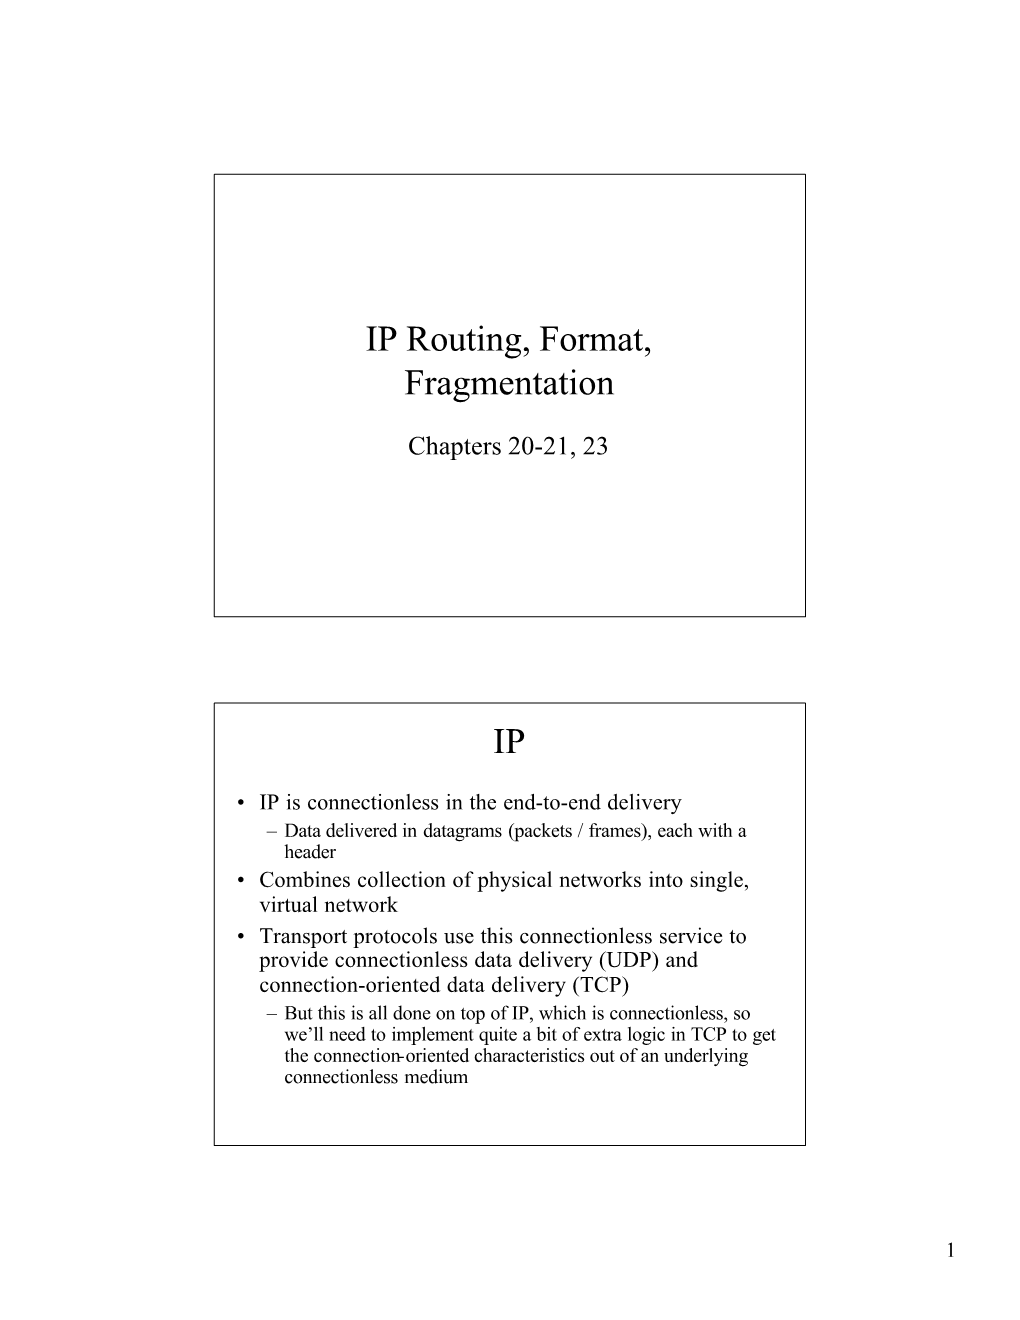 IP Routing, Format, Fragmentation IP